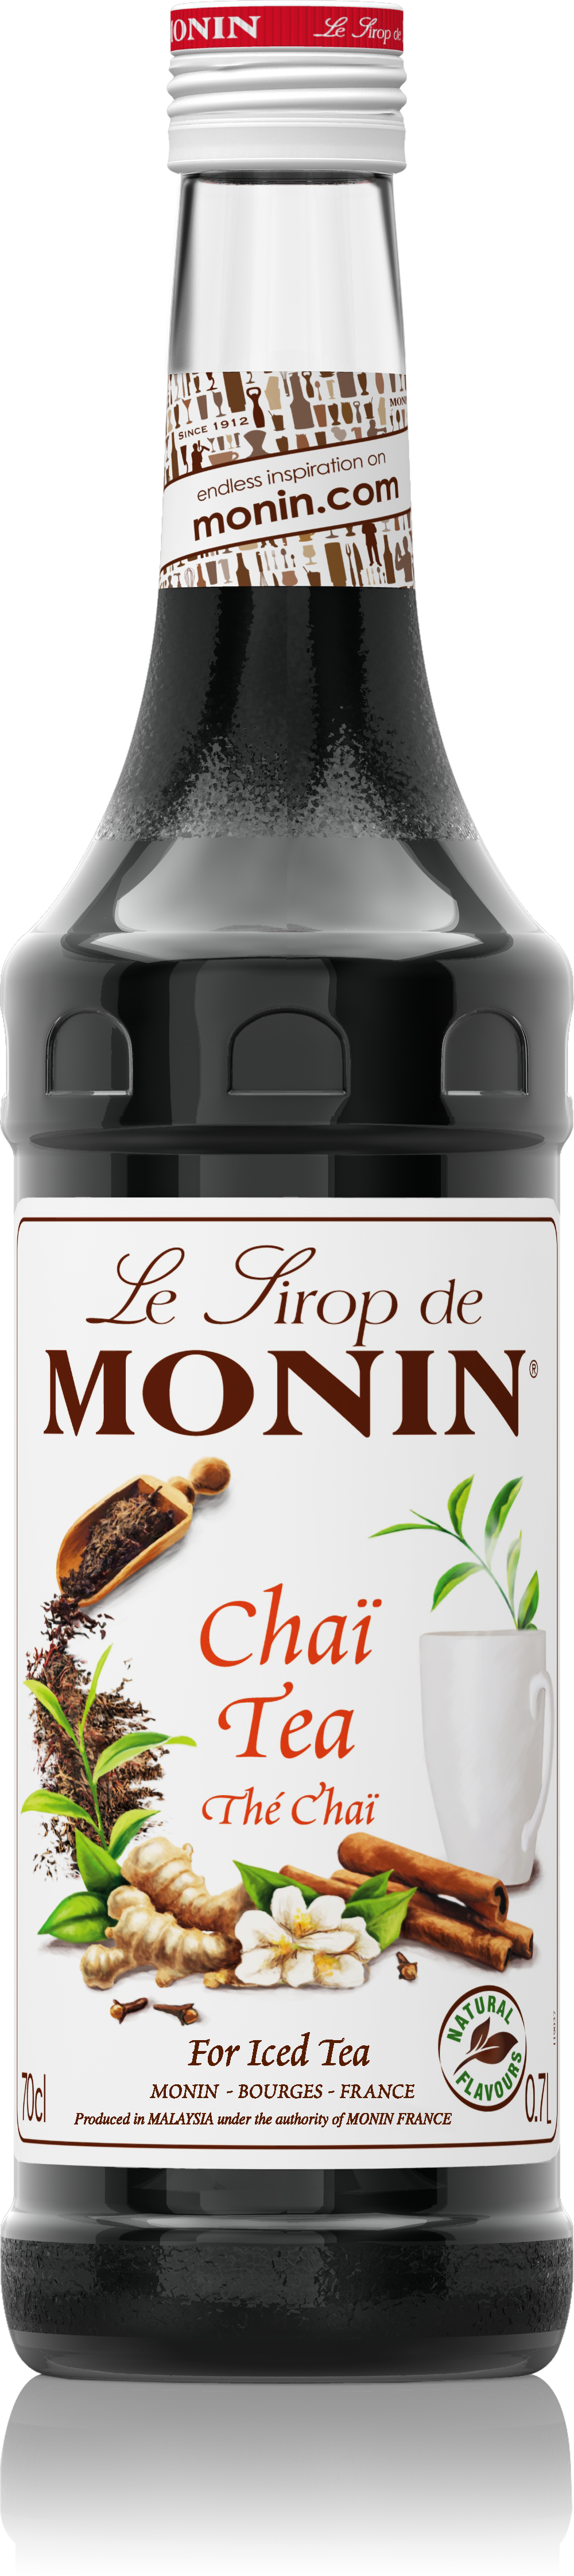 Le Sirop de MONIN Chaï Tea